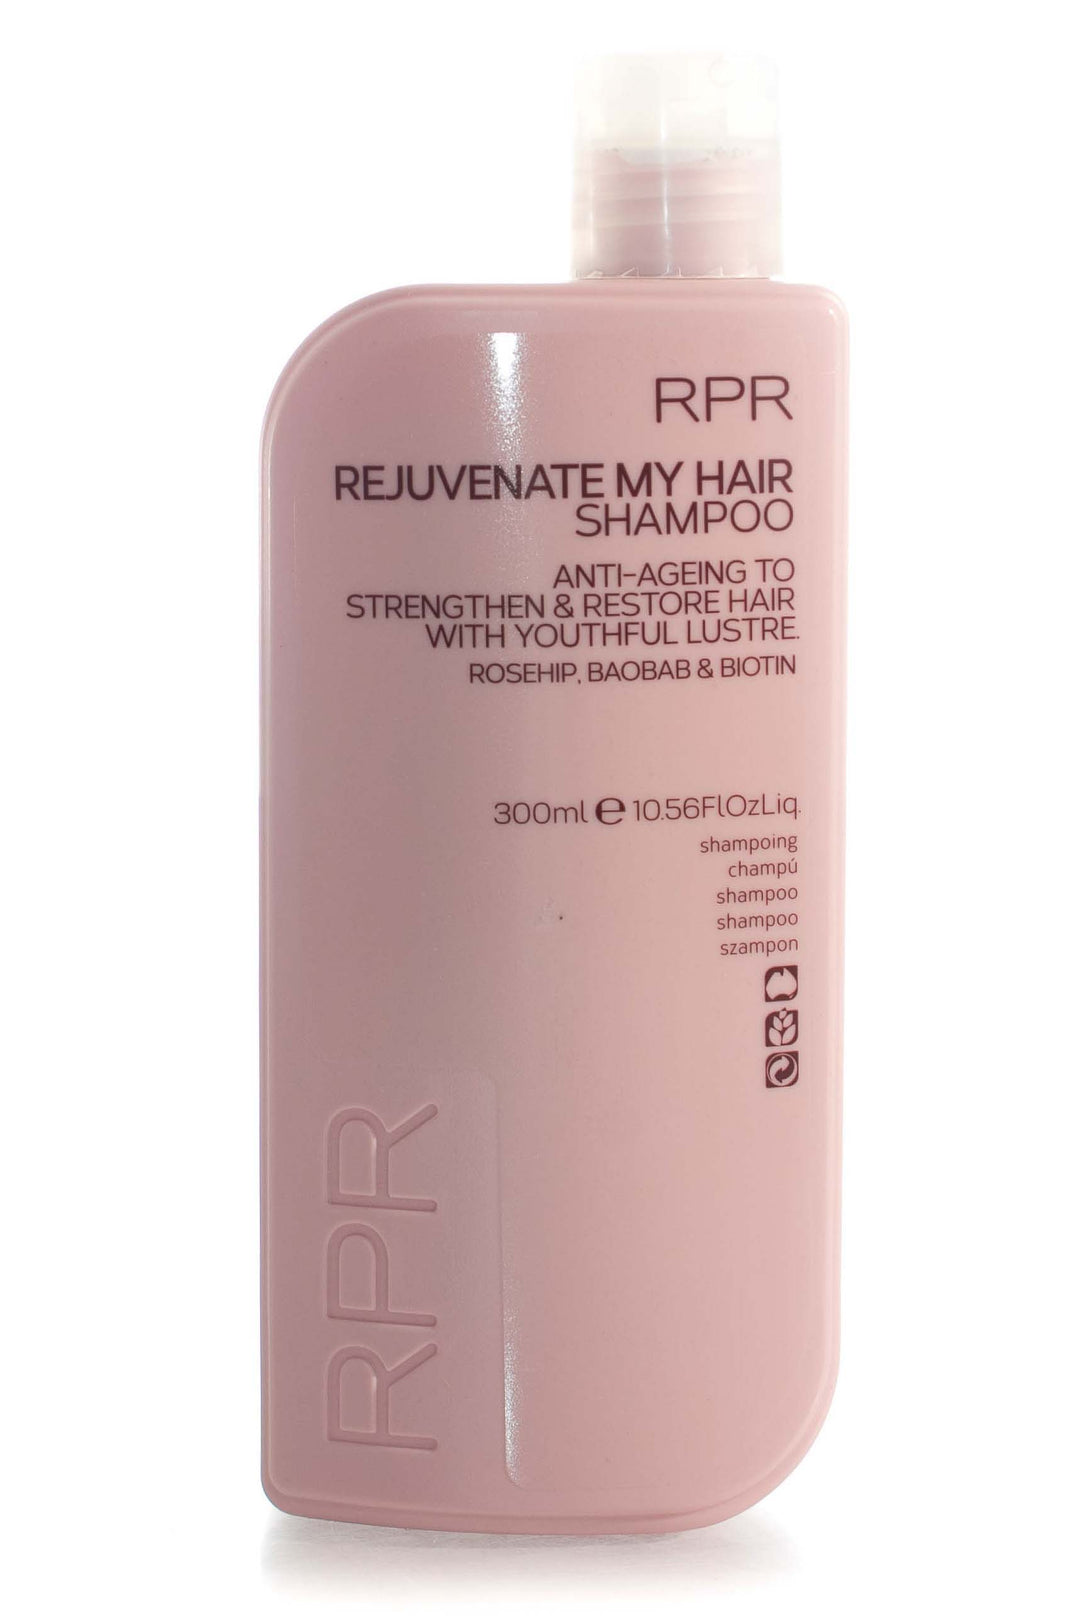 rpr-rejuvenate-my-hair-shampoo-300ml